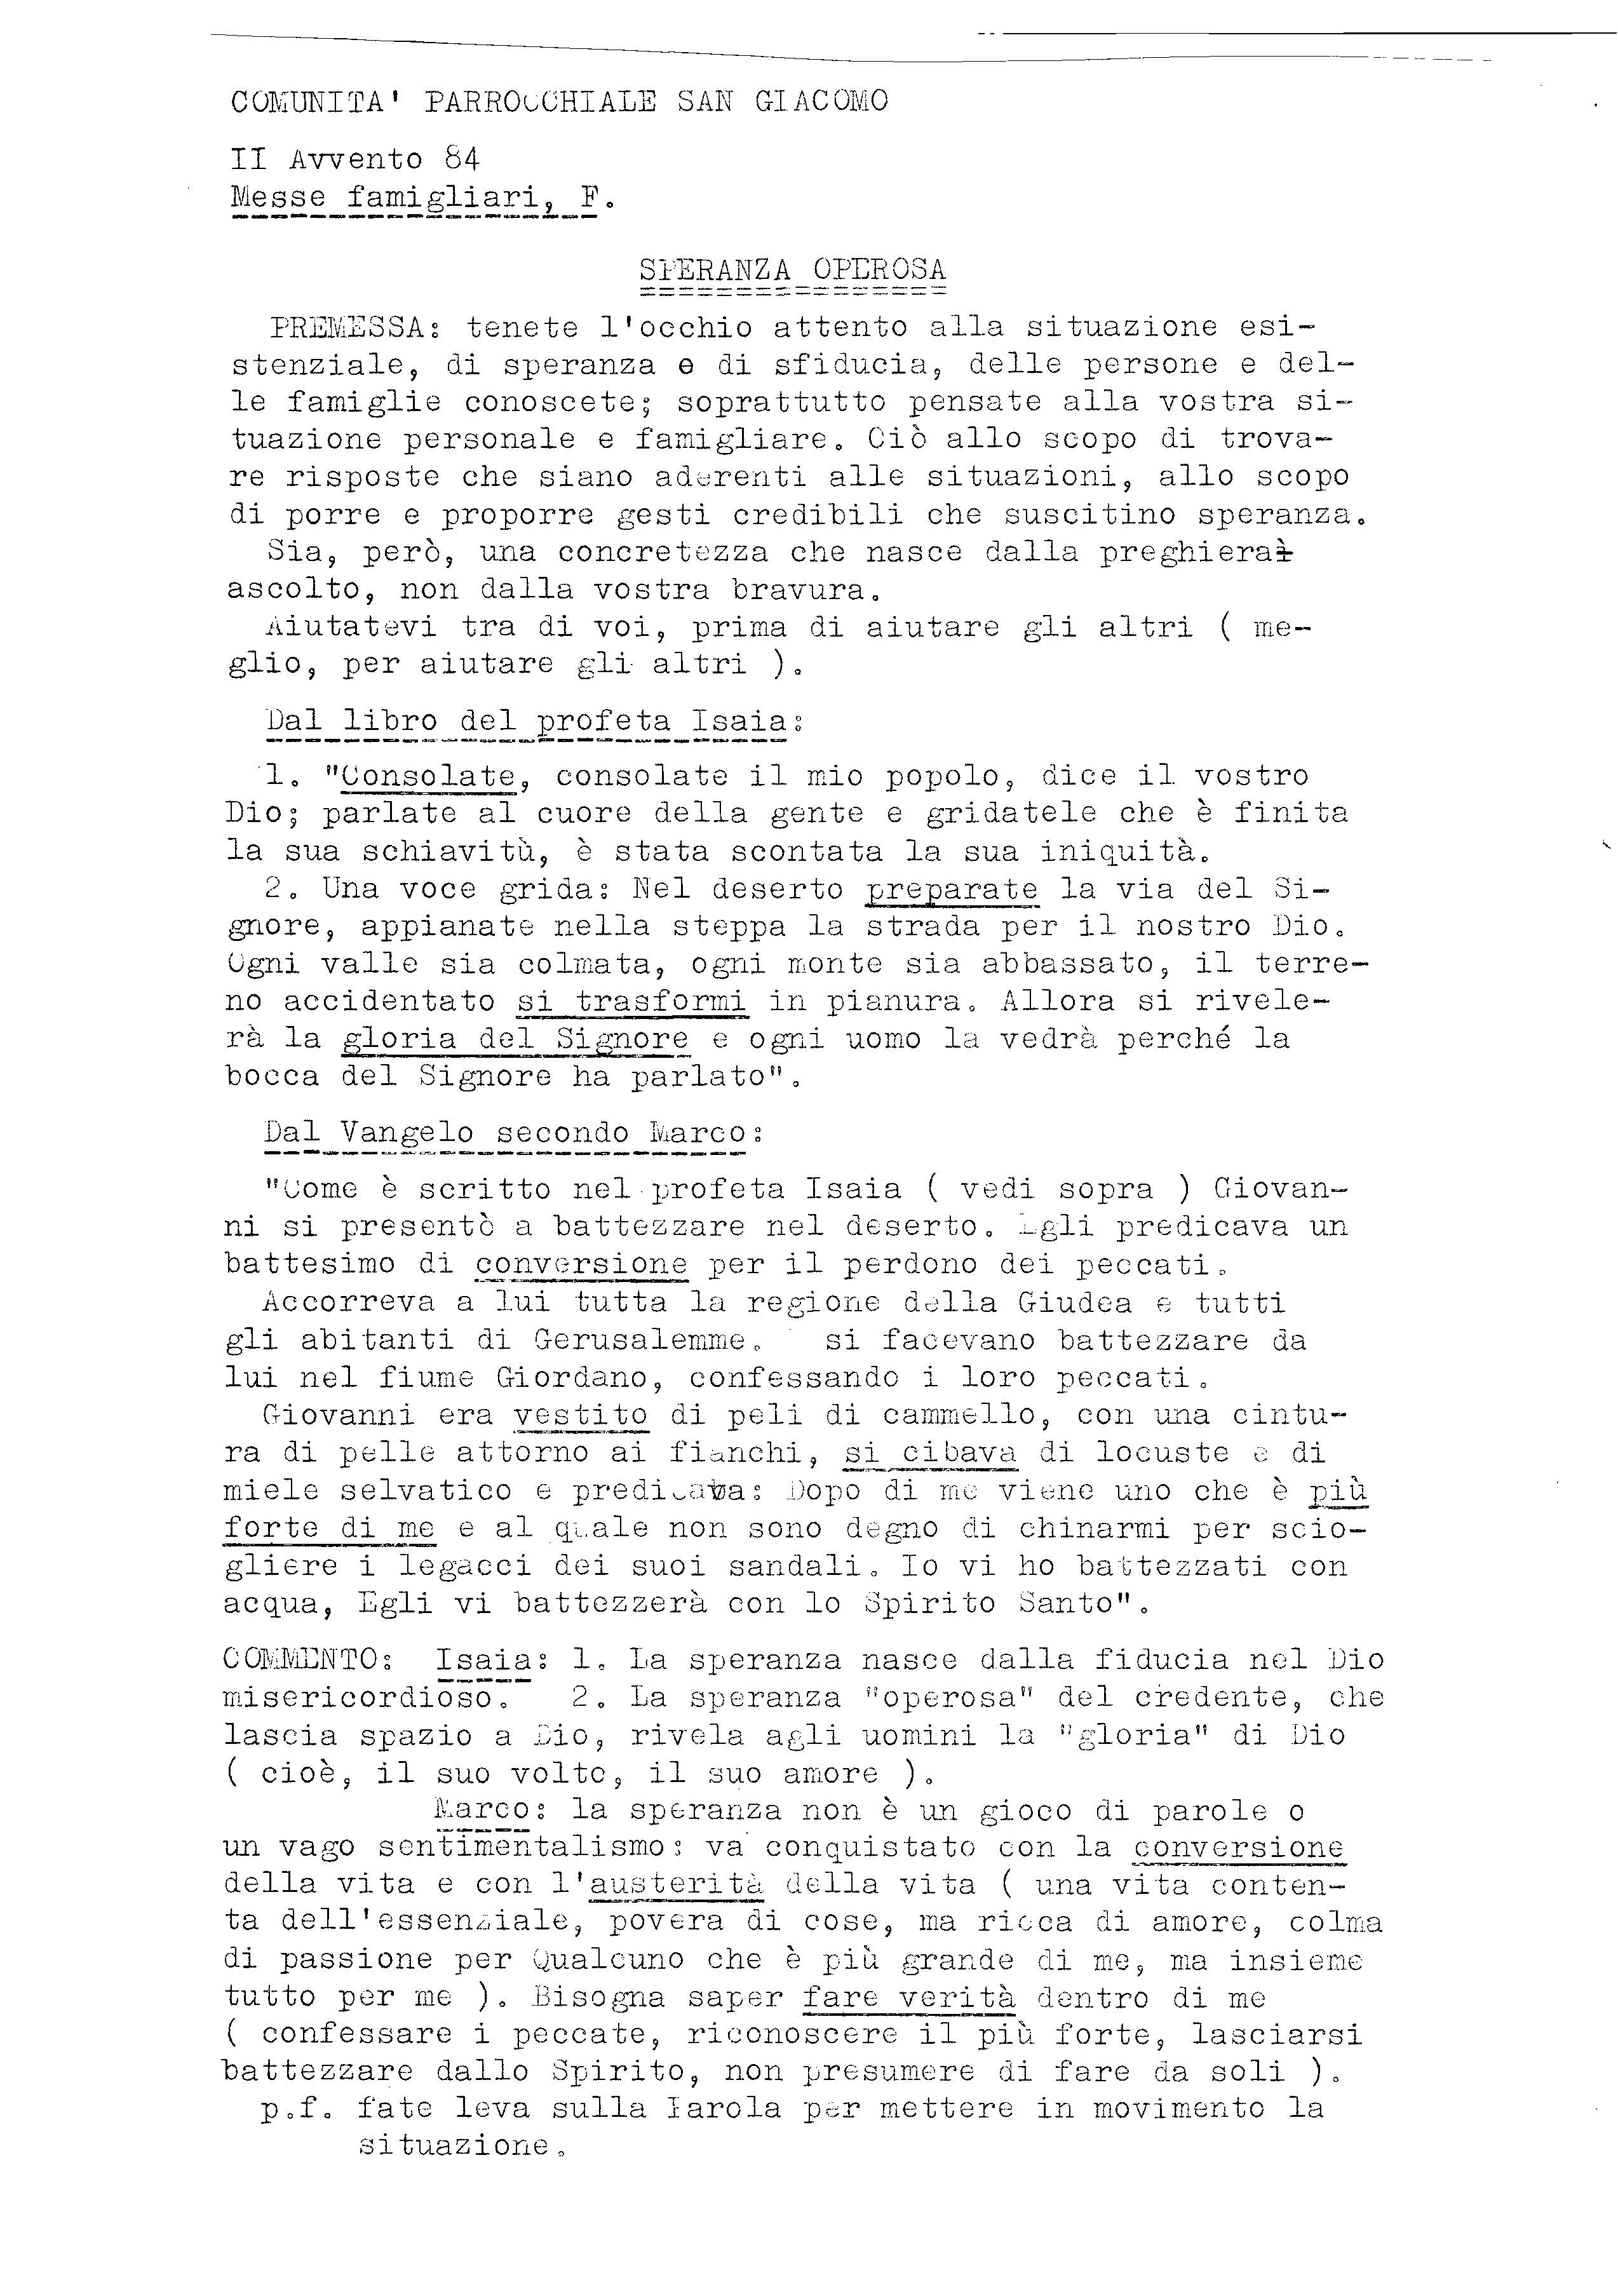 Avvento_Messe_famigliari_Speranza_operosa_1984.pdf